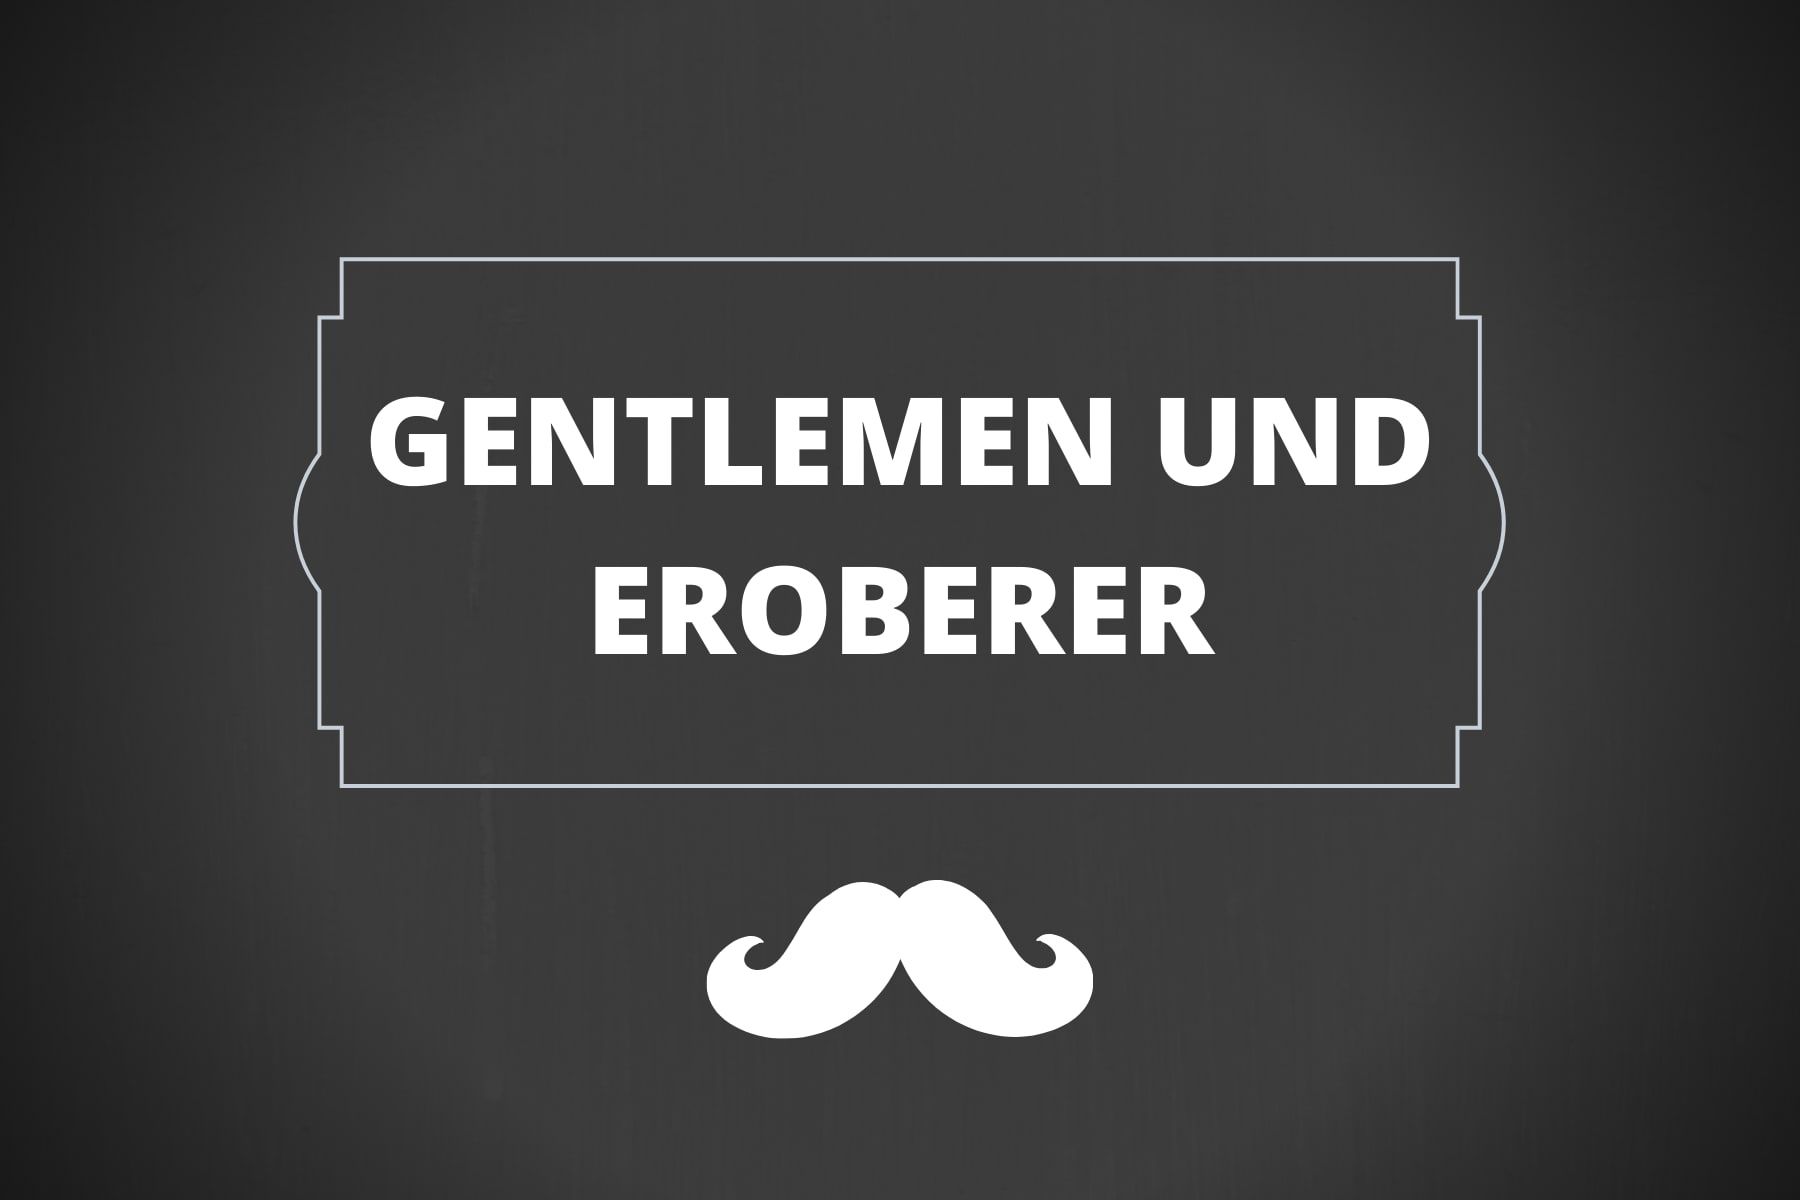 duefte-fuer-gentlemen-und-eroberer-gentleman-style-givenchy-roberto-cavalli-just-man-wissen-ist-mehr